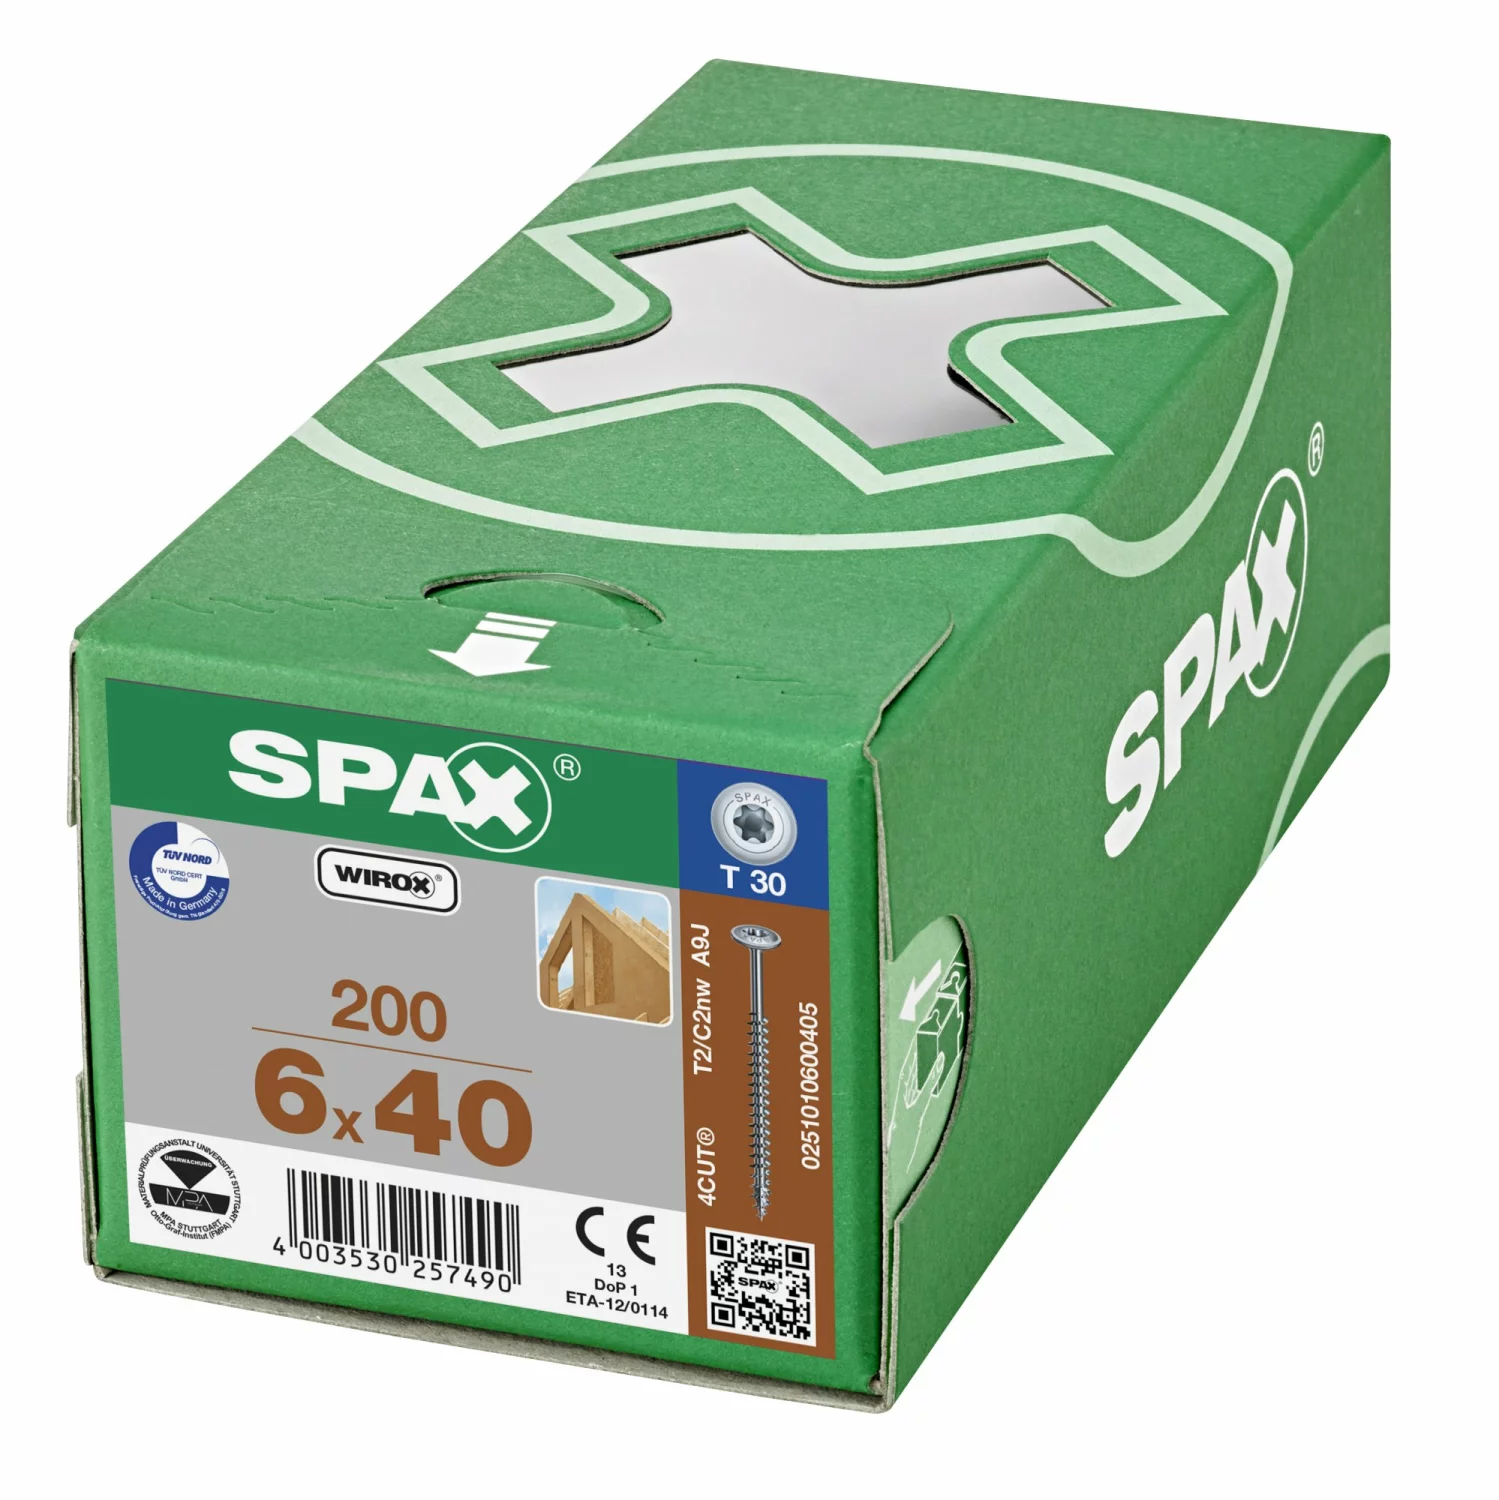 SPAX 251010600405 - HI.FORCE, 6 x 40 mm, 200 pièces, Tête centrante, Tête disque, T-STAR plus T30, 4CUT, WIROX